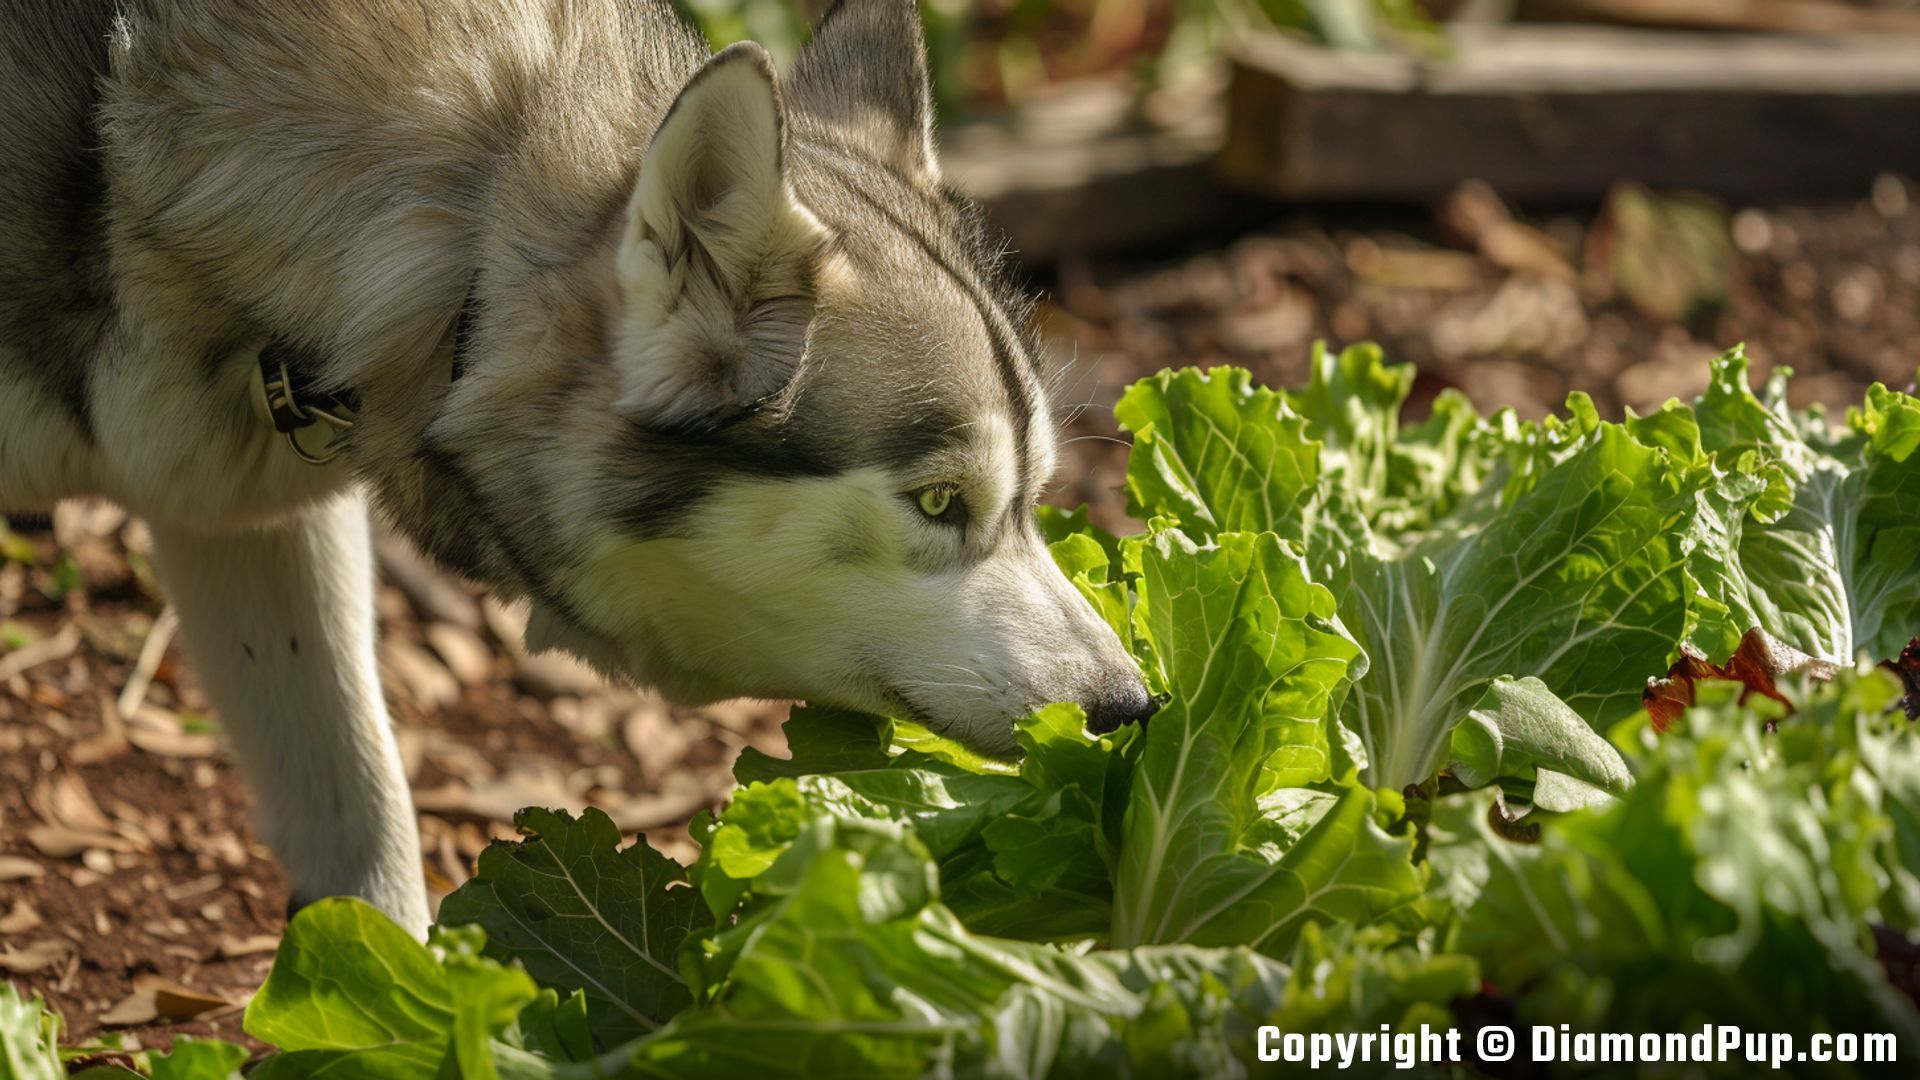 Photo of a Playful Husky Snacking on Lettuce